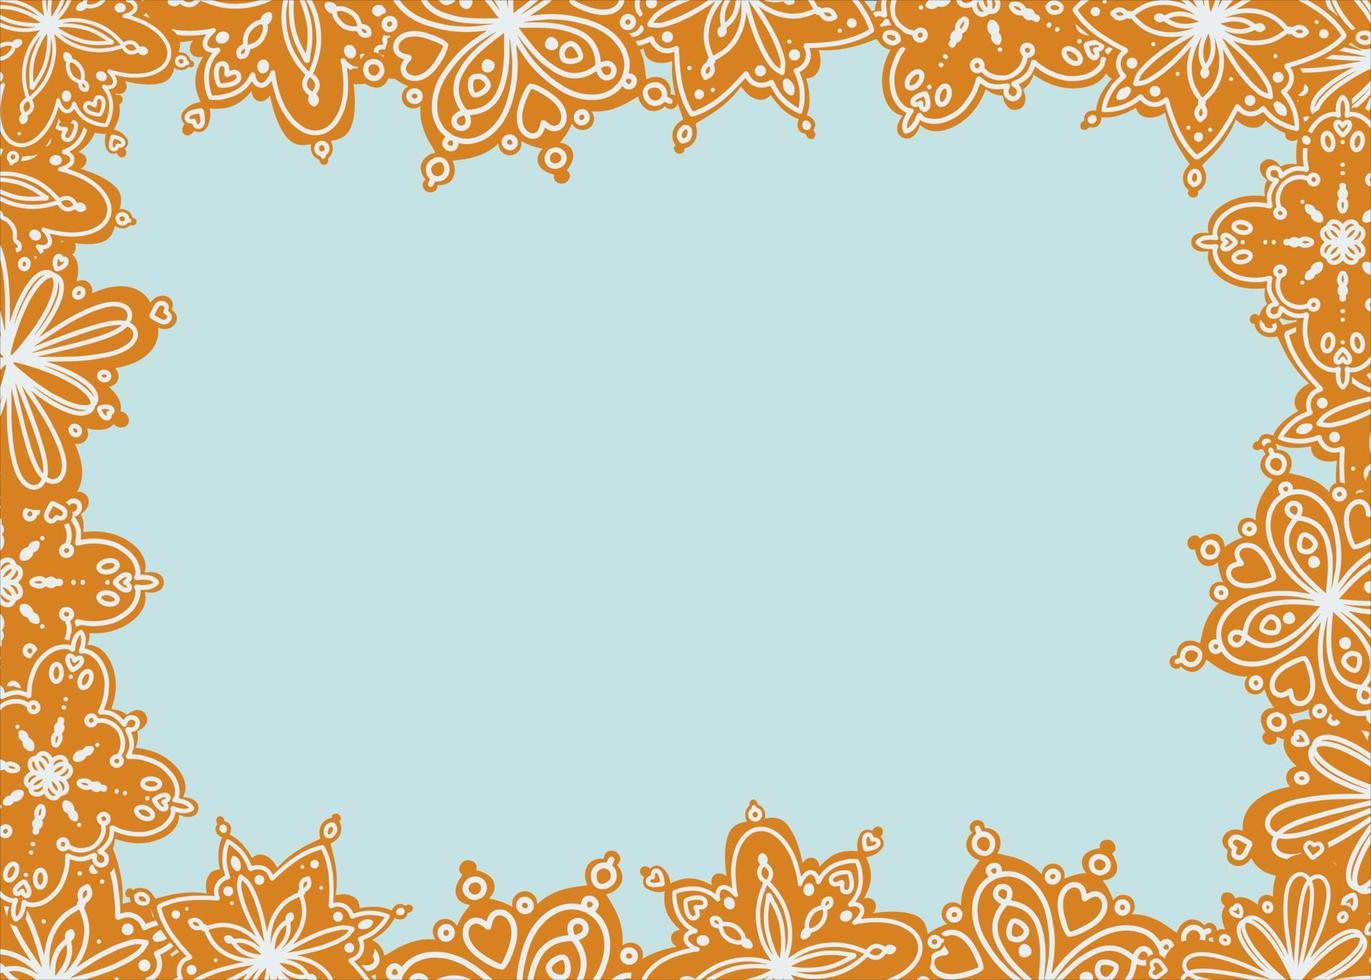 kader van peperkoek in de het formulier van sneeuwvlokken versierd met suiker glazuur. kader mockup ontwerp voor uitnodiging kaarten. decoratief grens. traditioneel achtergrond ontwerp. vector